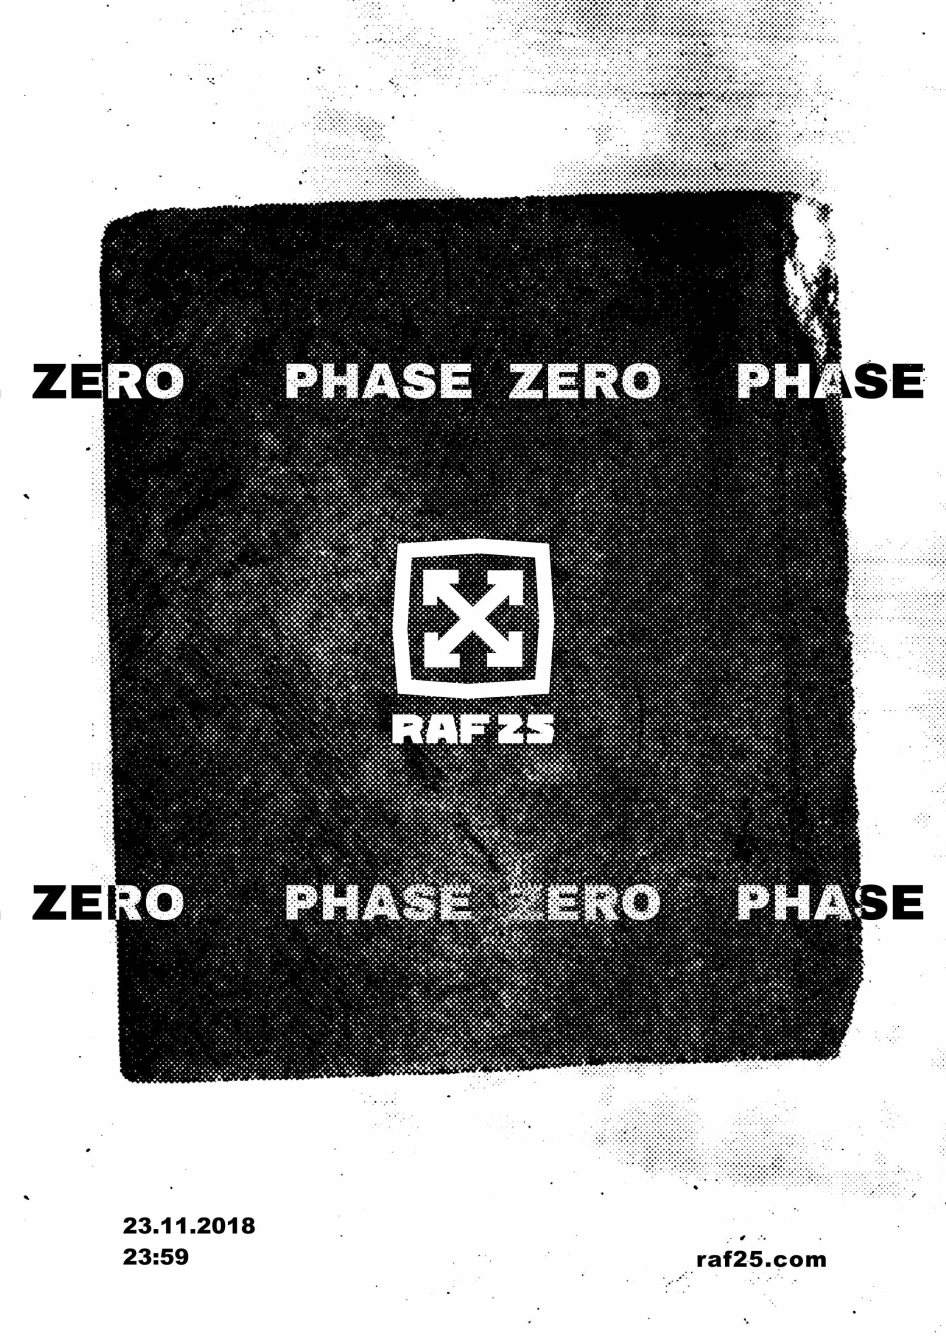 Phase Zero - フライヤー表